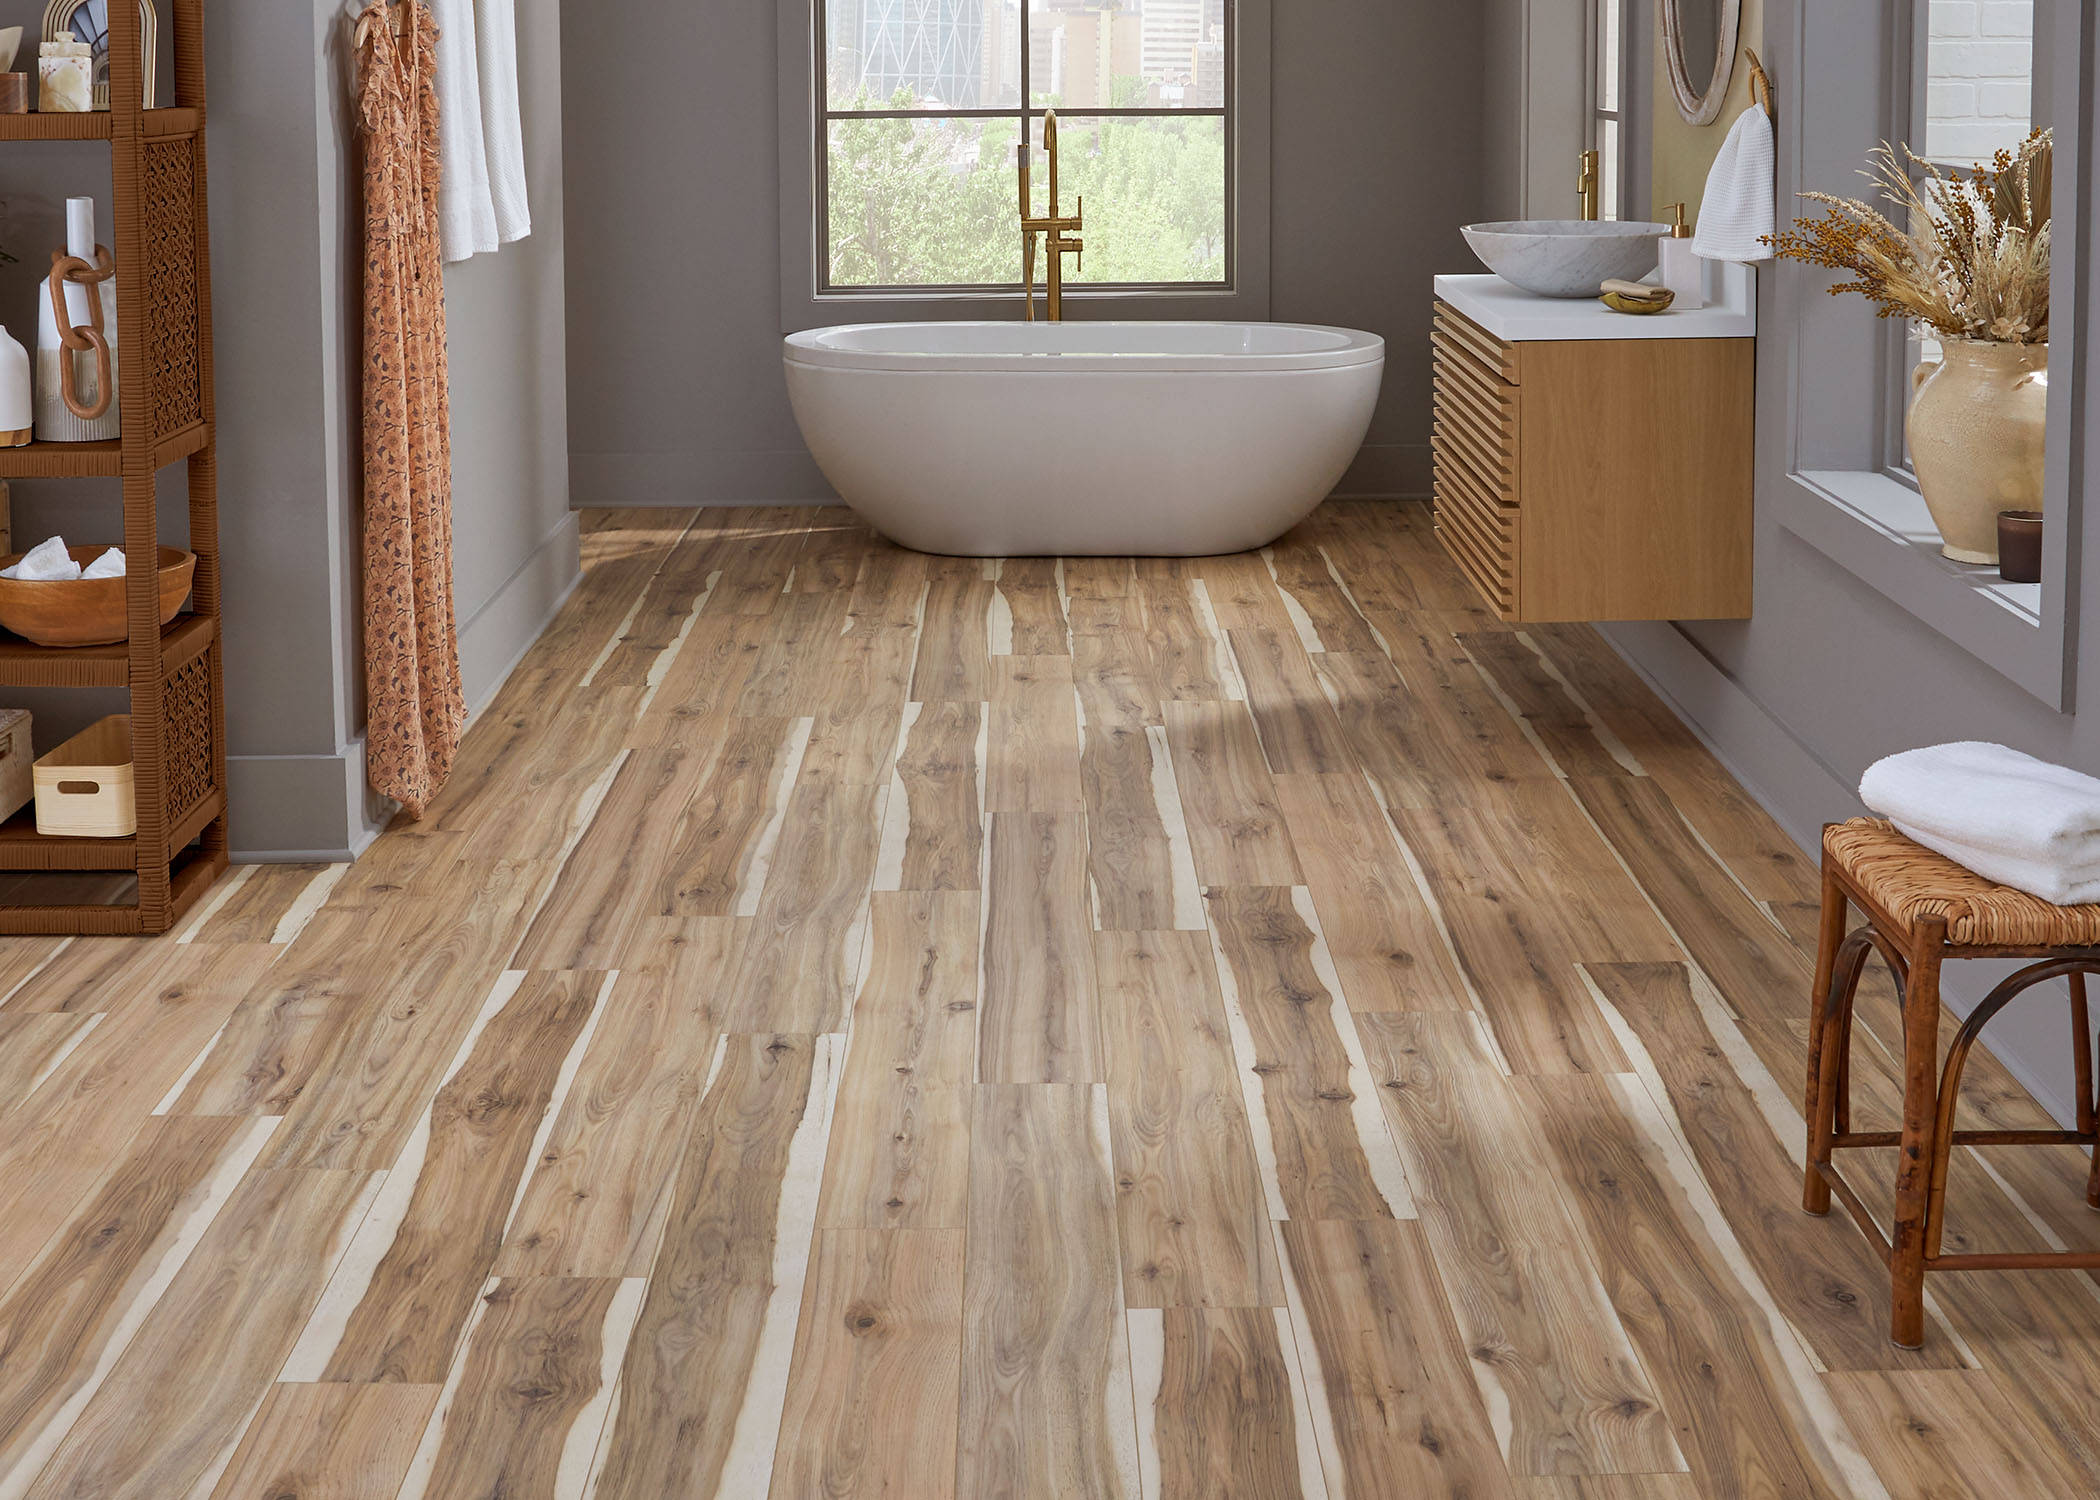 multi tone brown waterproof rigid vinyl plank flooring in bathroom with blonde wood floating vanity plus freestanding oval tub and rattan and cane stool